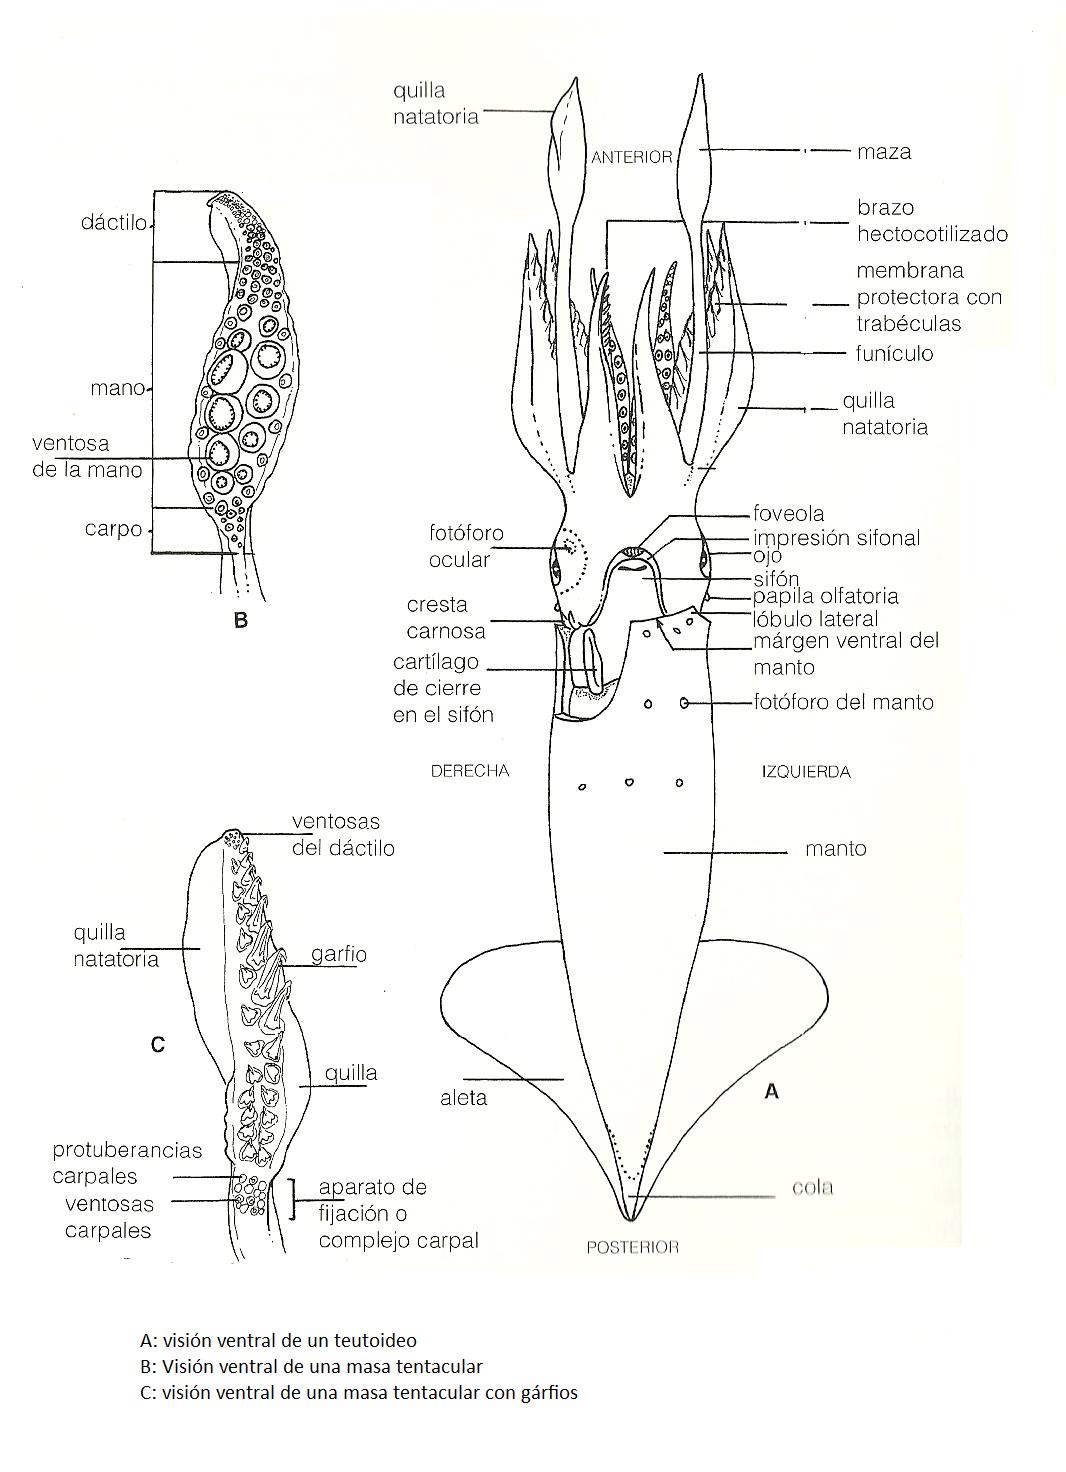 imagen 5: Anatomia interna de un calamar